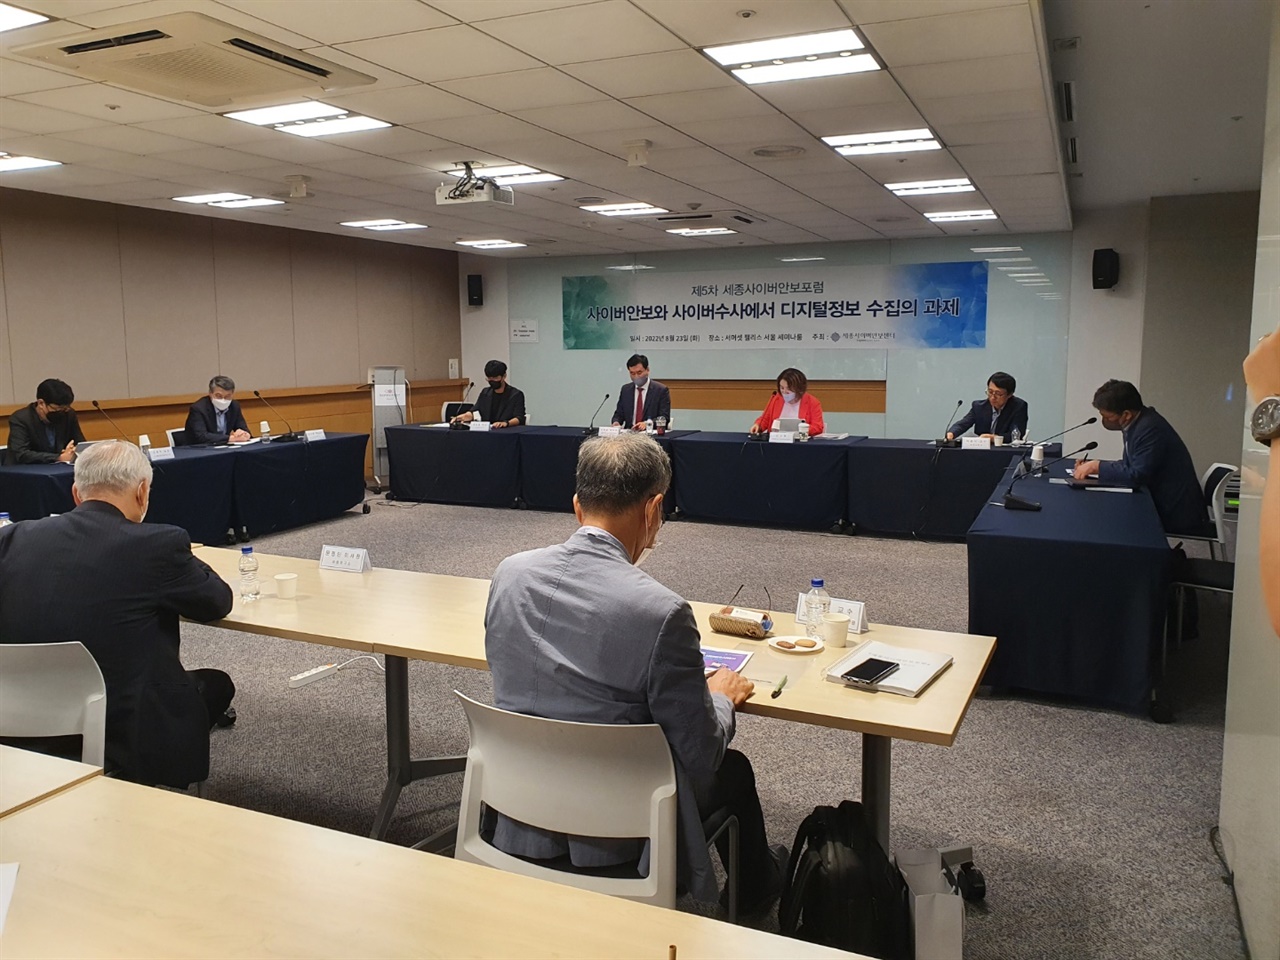 세종연구소는 8월 23일 서머셋팰리스(서울) 호텔에서 ‘사이버안보와 사이버수사 디지털정보 수집의 과제'를 주제로 '제5차 세종사이버안보포럼'을 개최하였다. 